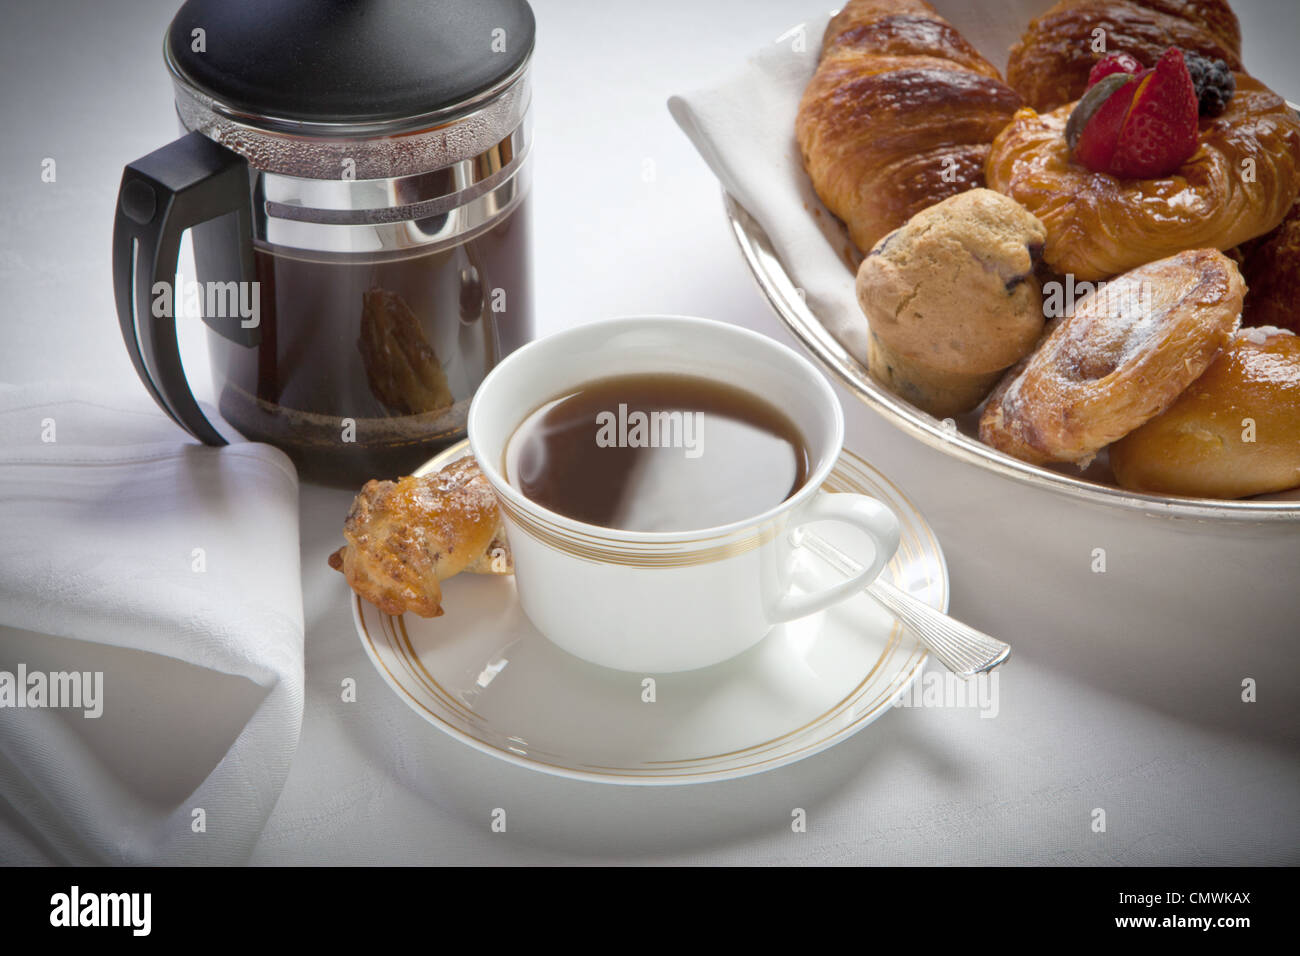 Petit-déjeuner tasse de café et cafetière à blanc et avec des pâtisseries , disposés sur une nappe de lin blanc Banque D'Images